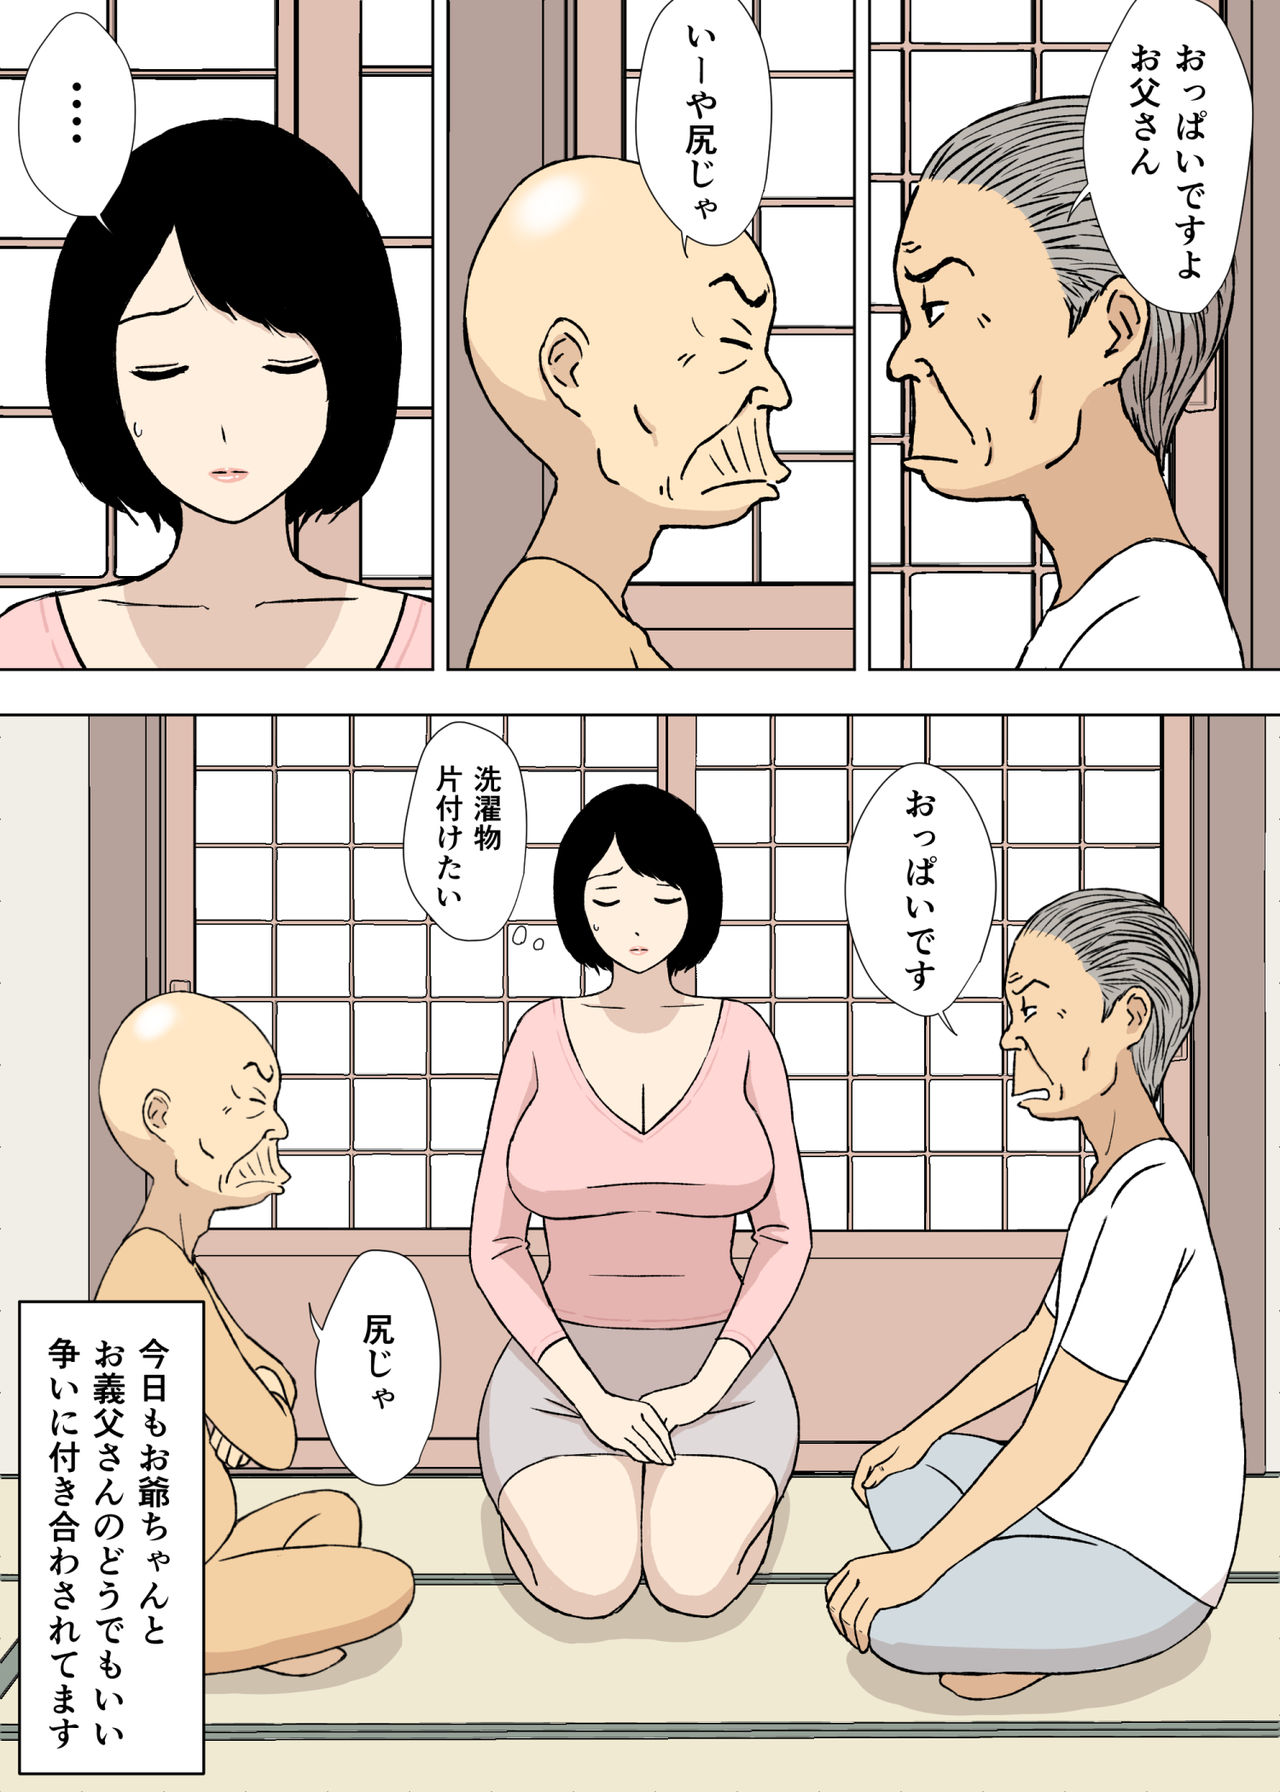 [Urakan] Ojii-chan to Gifu to Giri no Musuko to, Kyonyuu Yome. 5 [U羅漢] お爺ちゃんと義父と義理の息子と、巨乳嫁。5